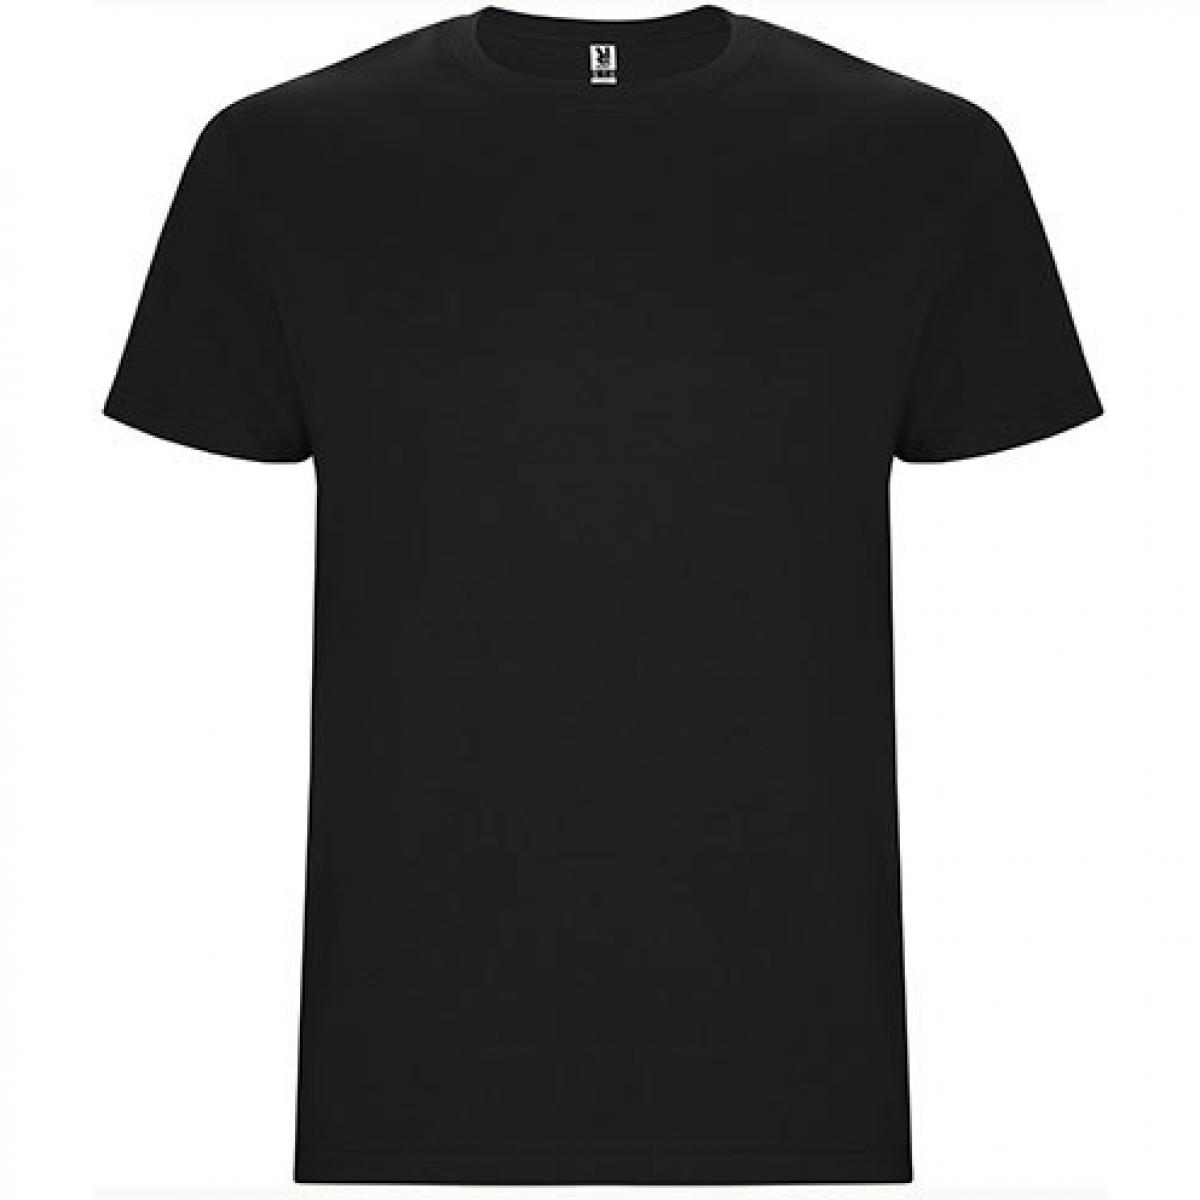 Hersteller: Roly Herstellernummer: CA6681 Artikelbezeichnung: Stafford T-Shirt - Doppellagiger Rundhalskragen Farbe: Black 02